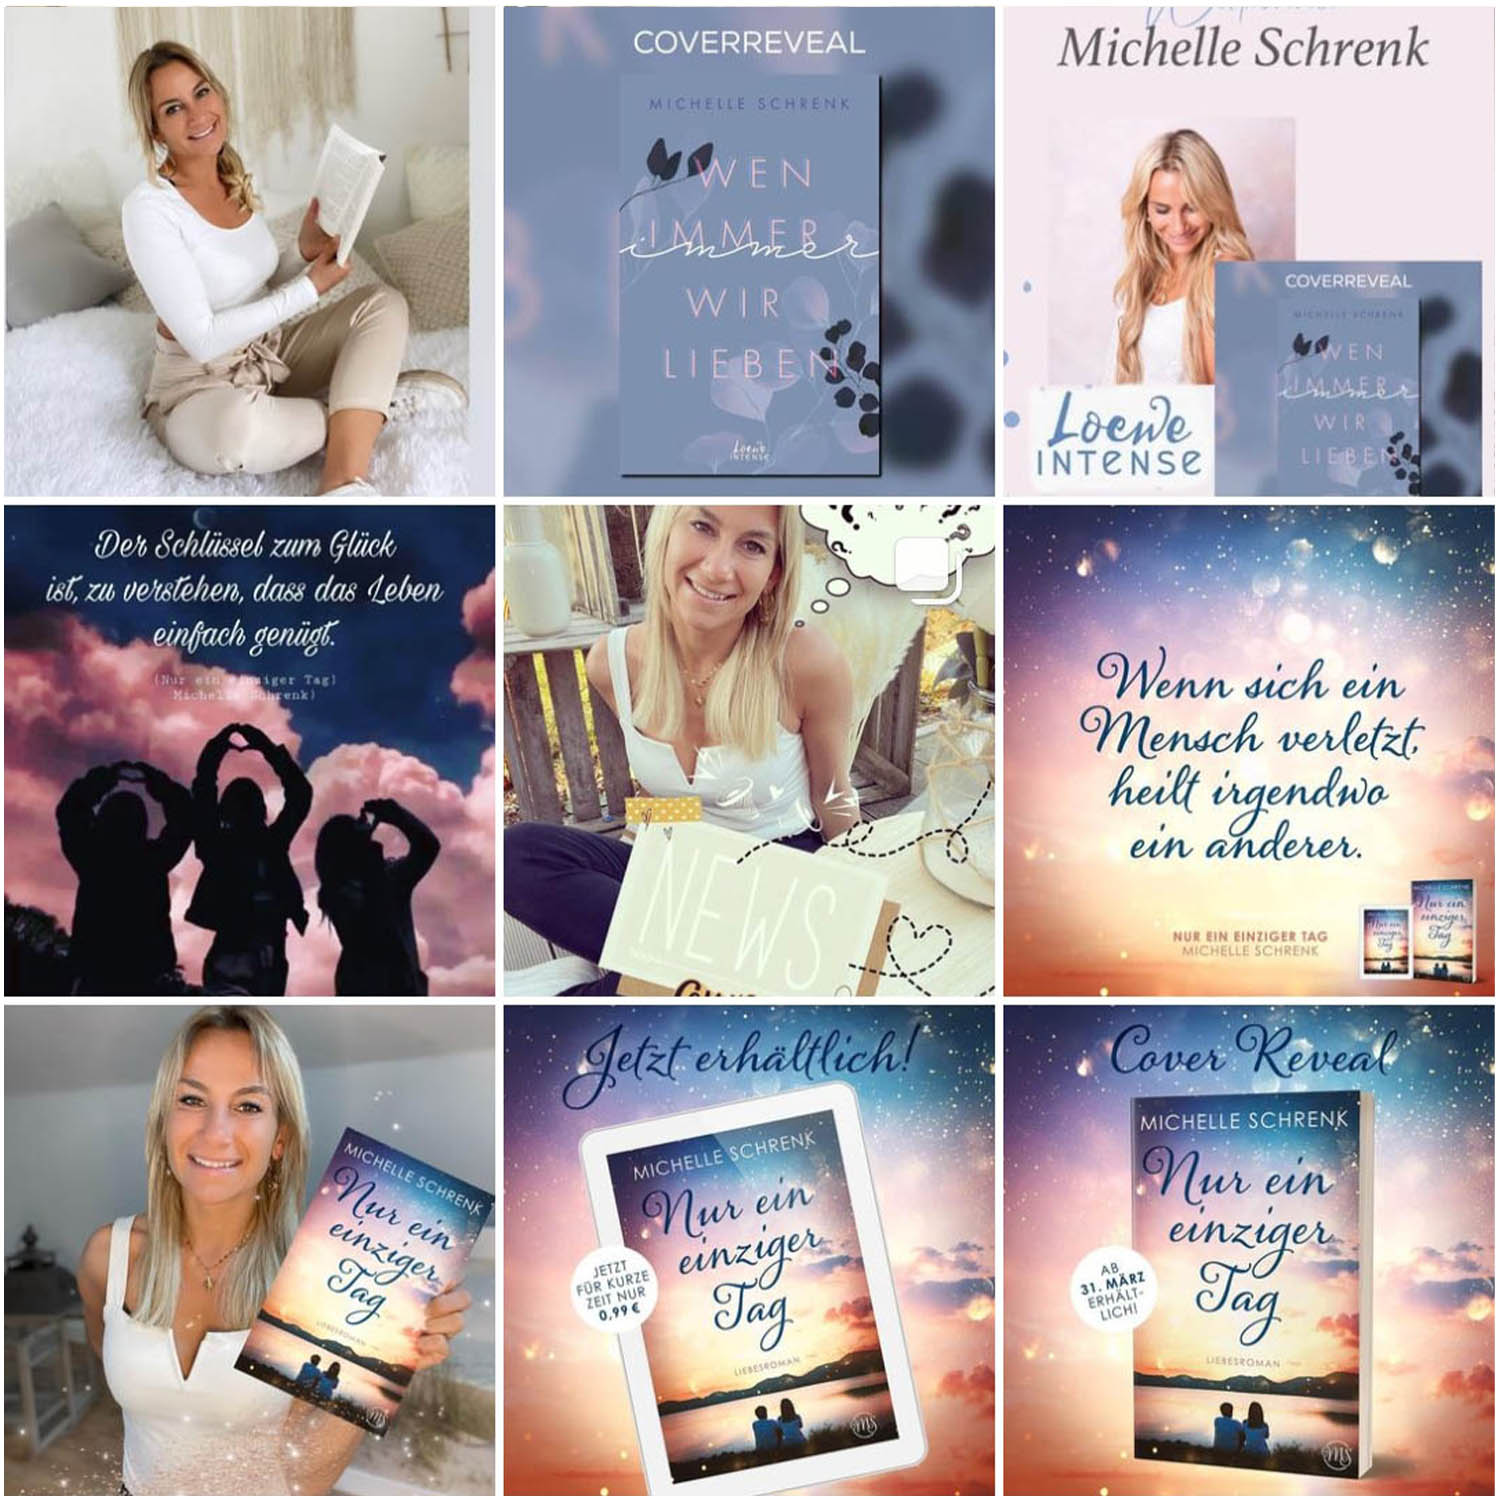 Auf ihrem Instagram-Profil teilt New Adult Bestsellerautorin Michelle Schrenk noch mehr Informationen zu ihren Liebesgeschichten und Young Adult Romanen.